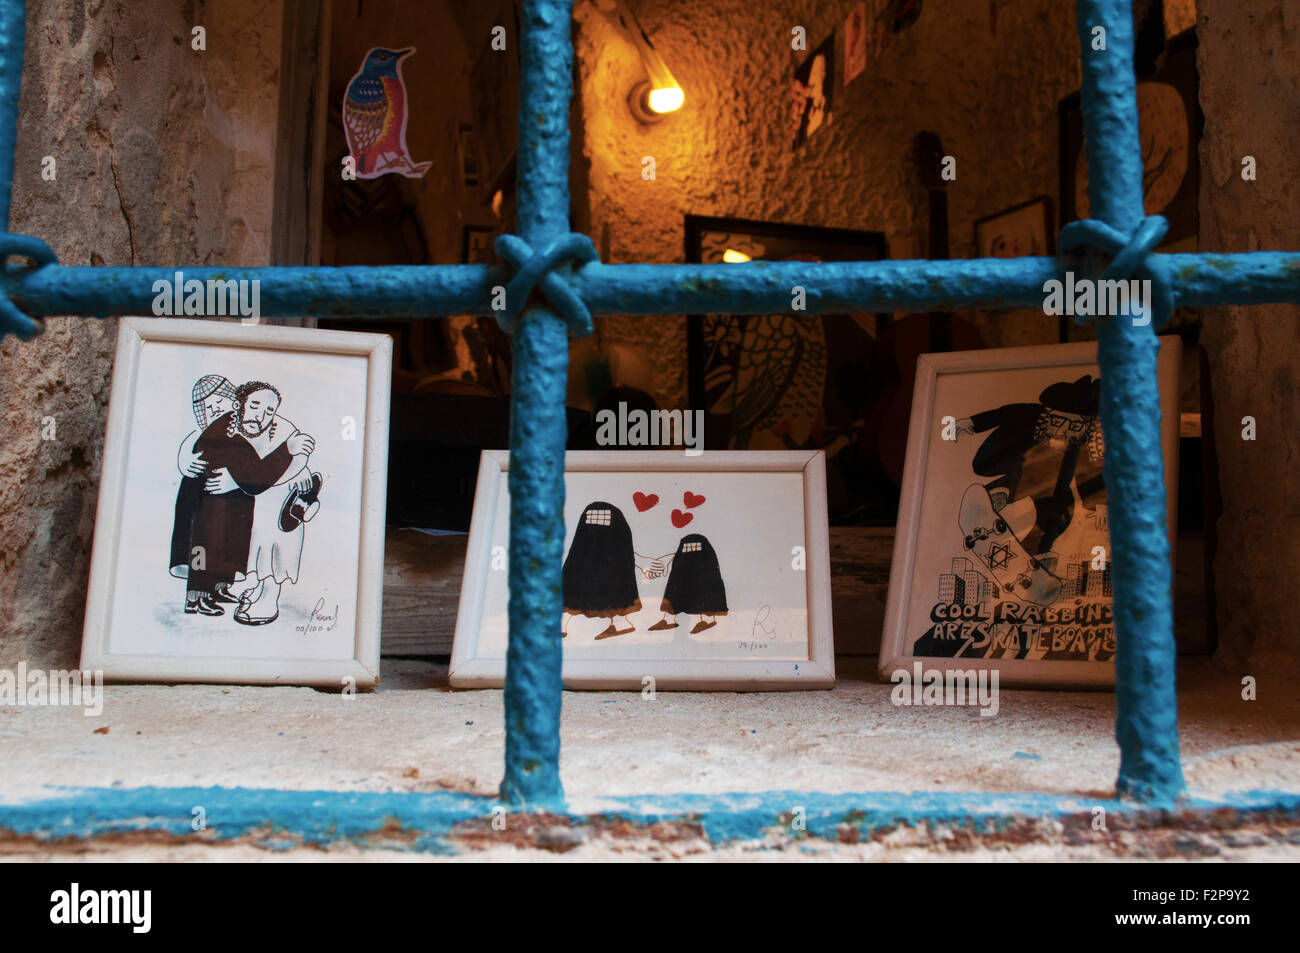 Jaffa, artes y artesanías hechas a mano de imágenes, drawning, artista, Israel, musulmán, abrazo, hombre judío, la integración, la convivencia, la tolerancia, la paz, simbólico Foto de stock